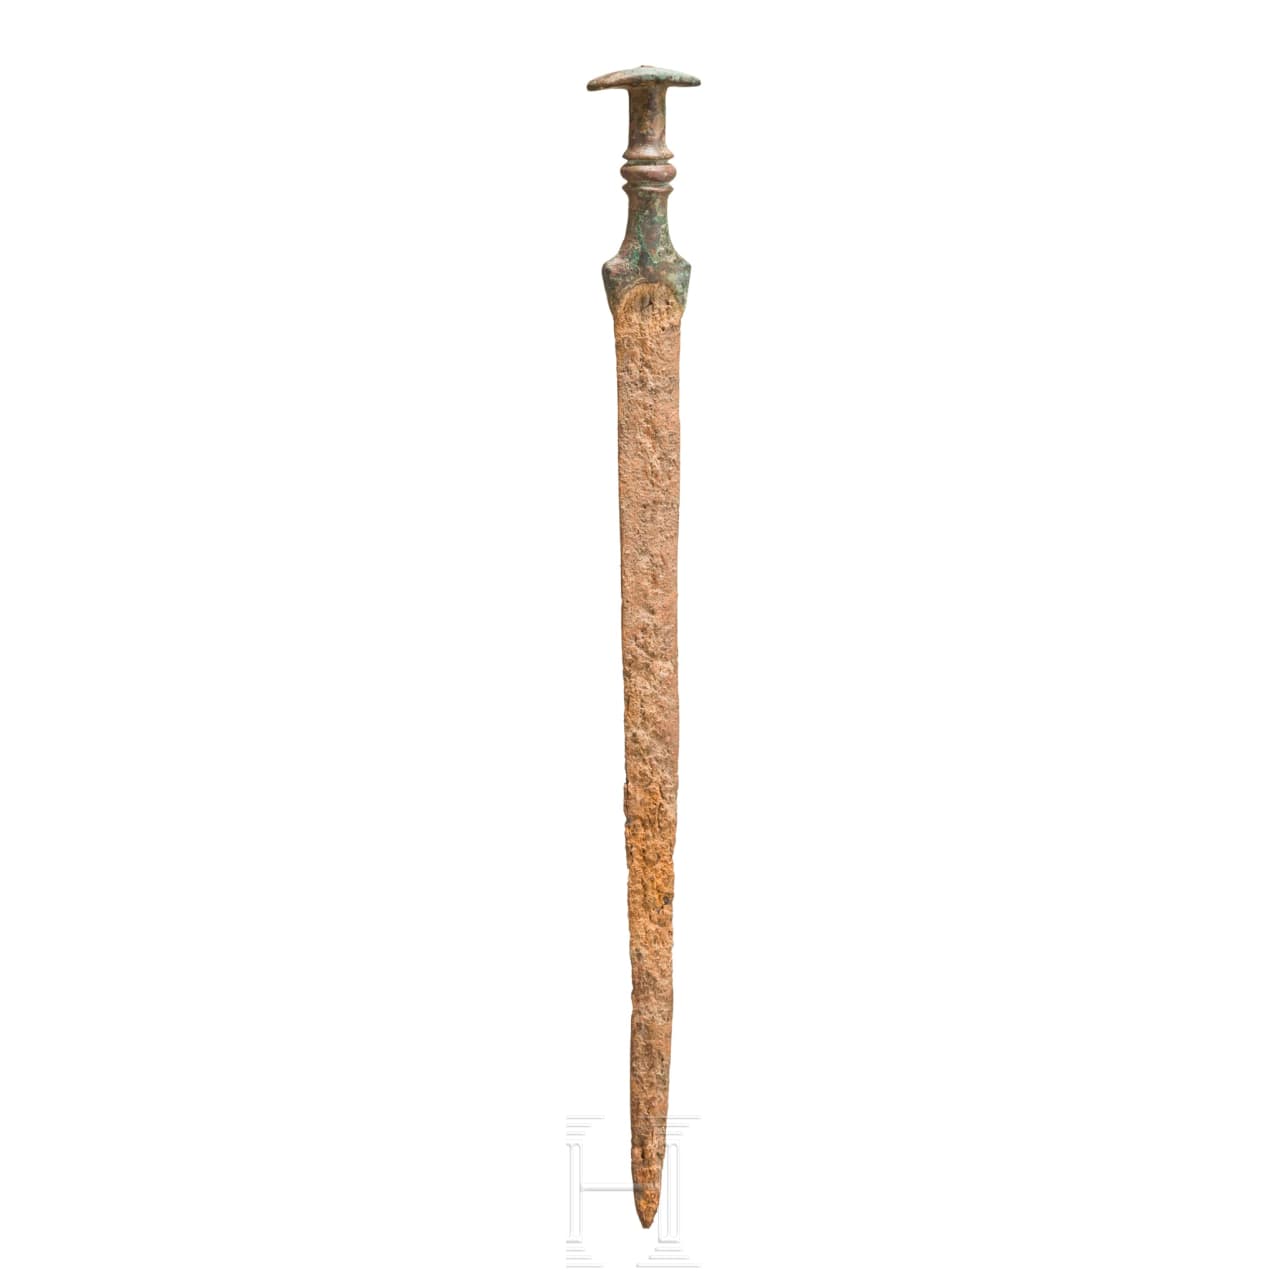 Eisenschwert mit Bronzegriff, hethitisch, 14. - 13. Jhdt. v. Chr.